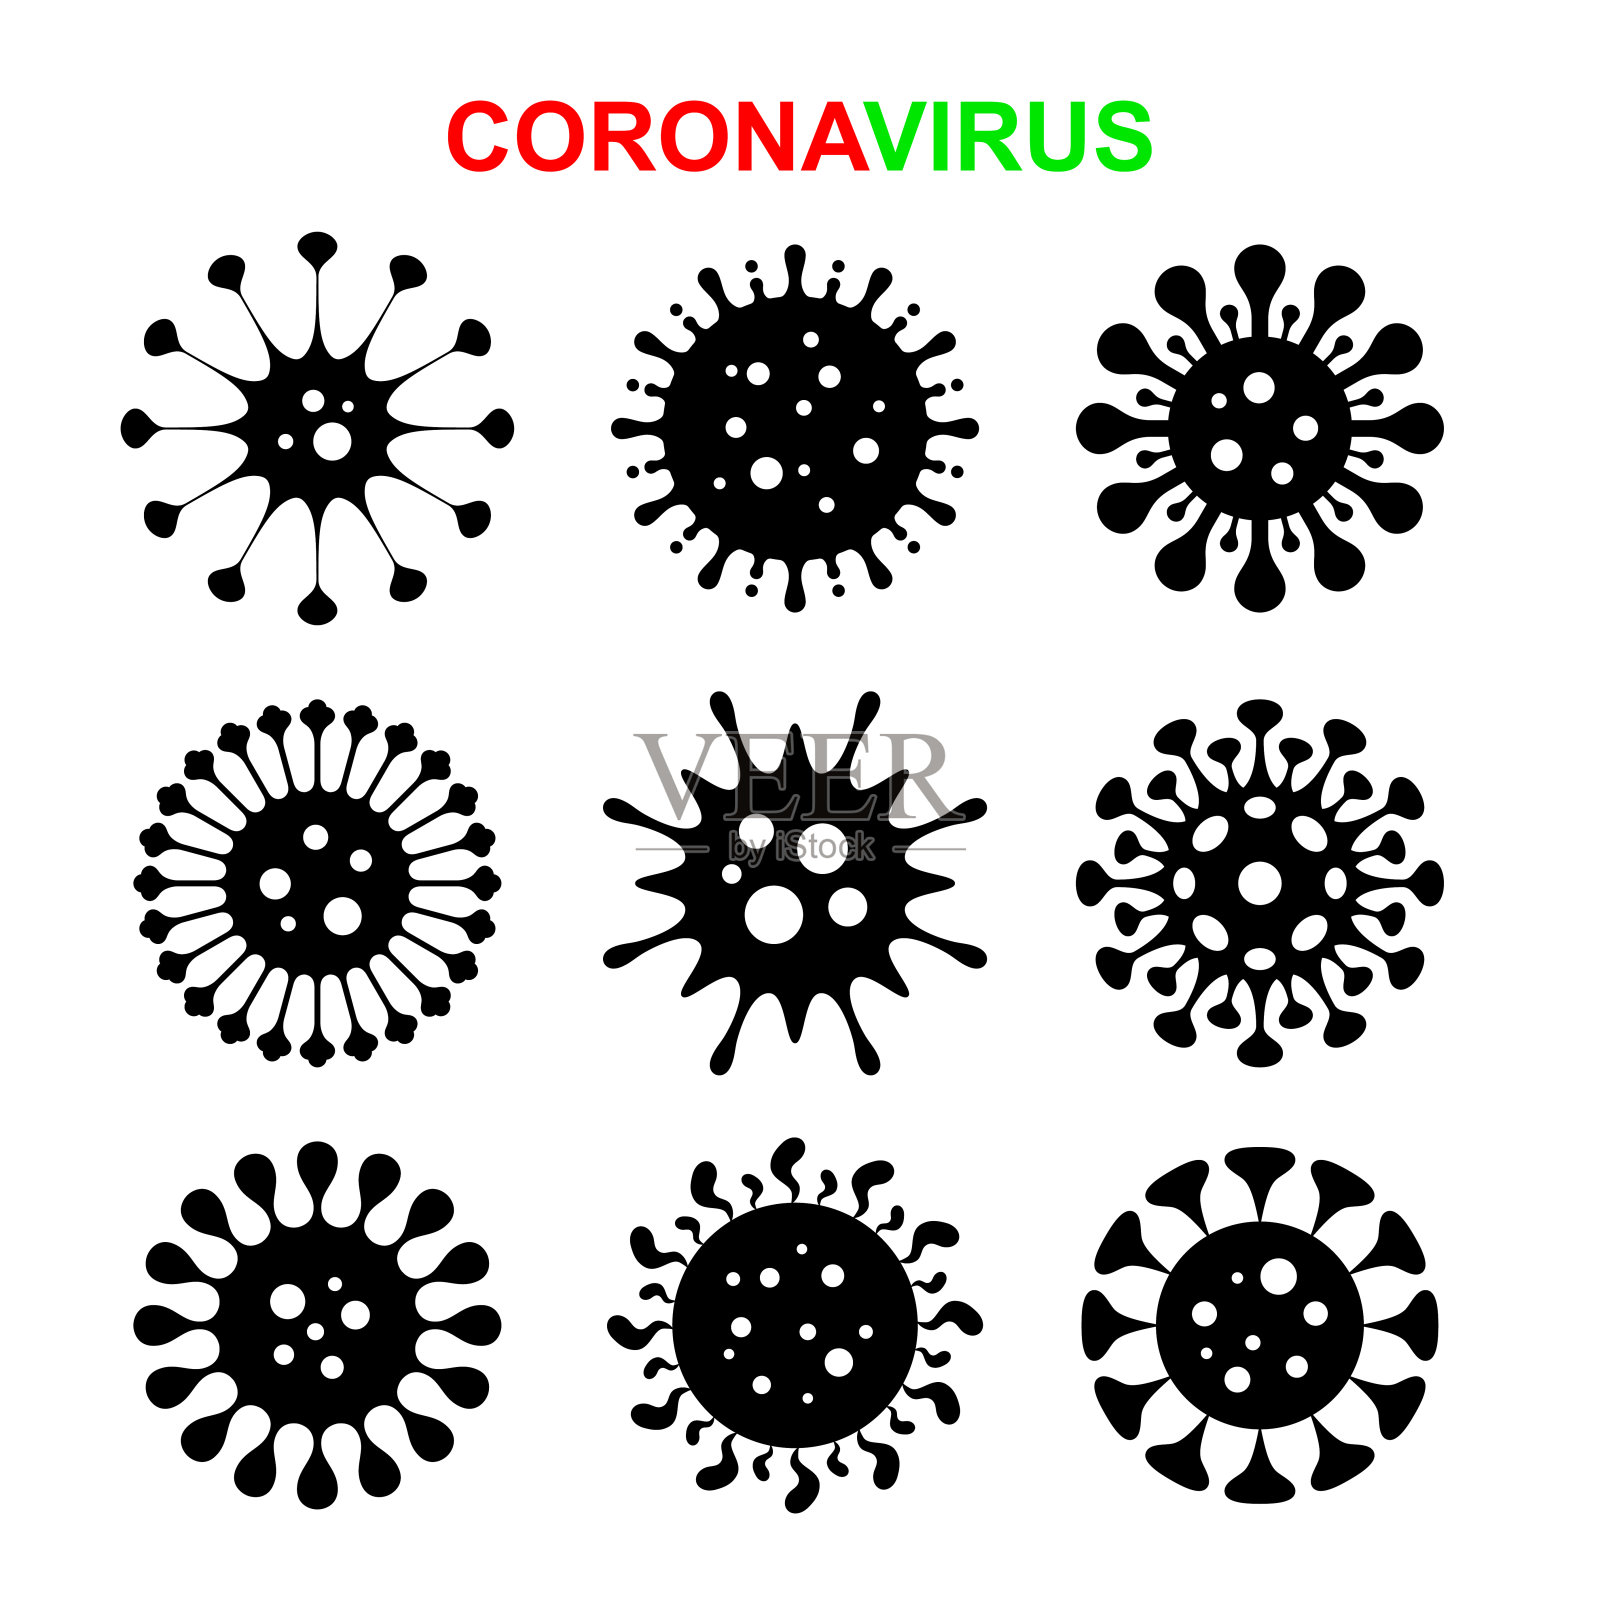 一系列不同形式的冠状病毒细胞插画图片素材